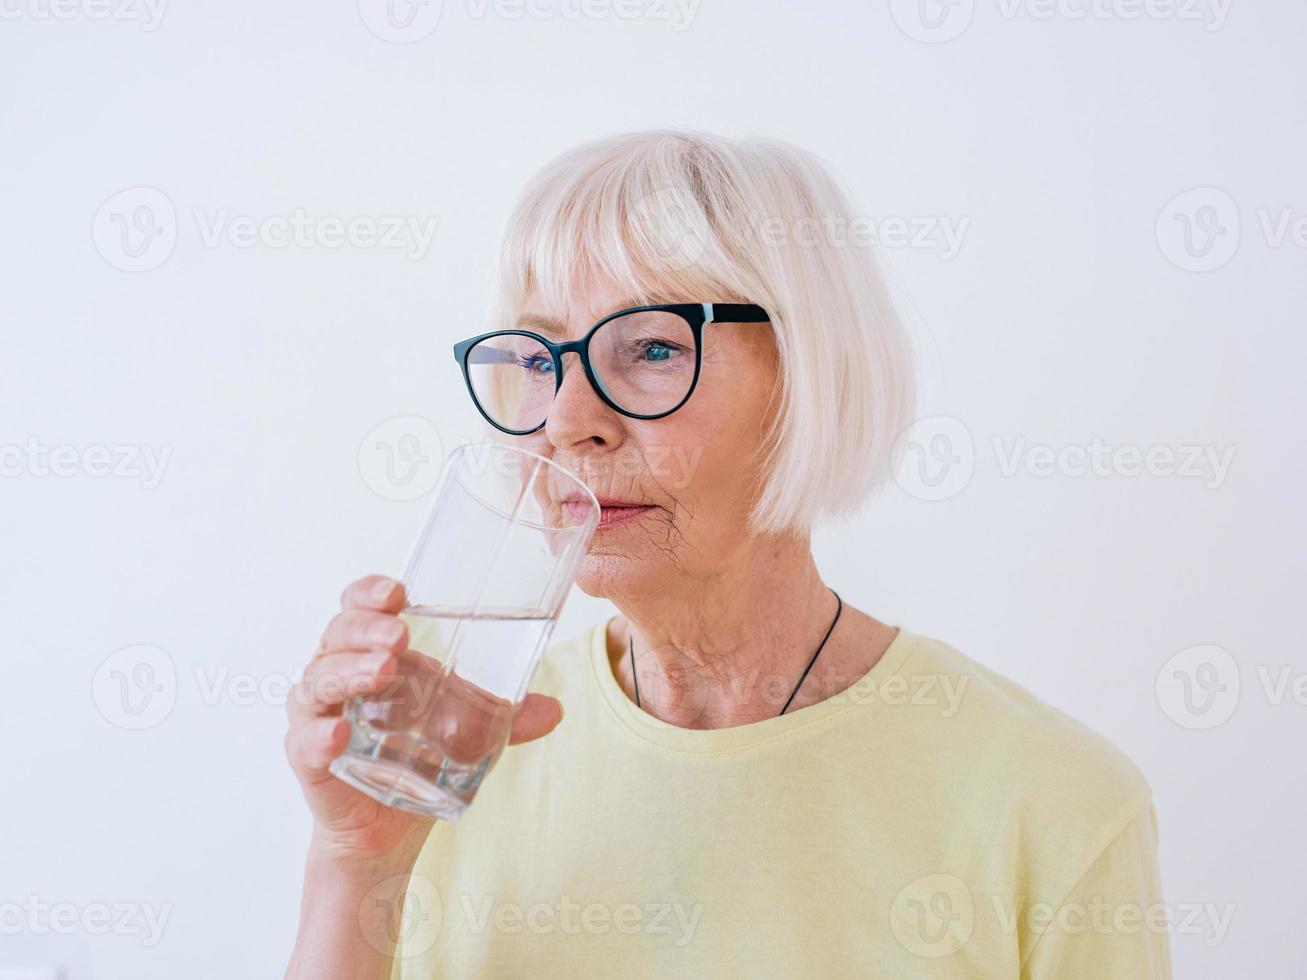 mujer mayor sosteniendo un vaso de agua y agua potable. estilo de vida saludable, deporte, concepto anti-edad foto